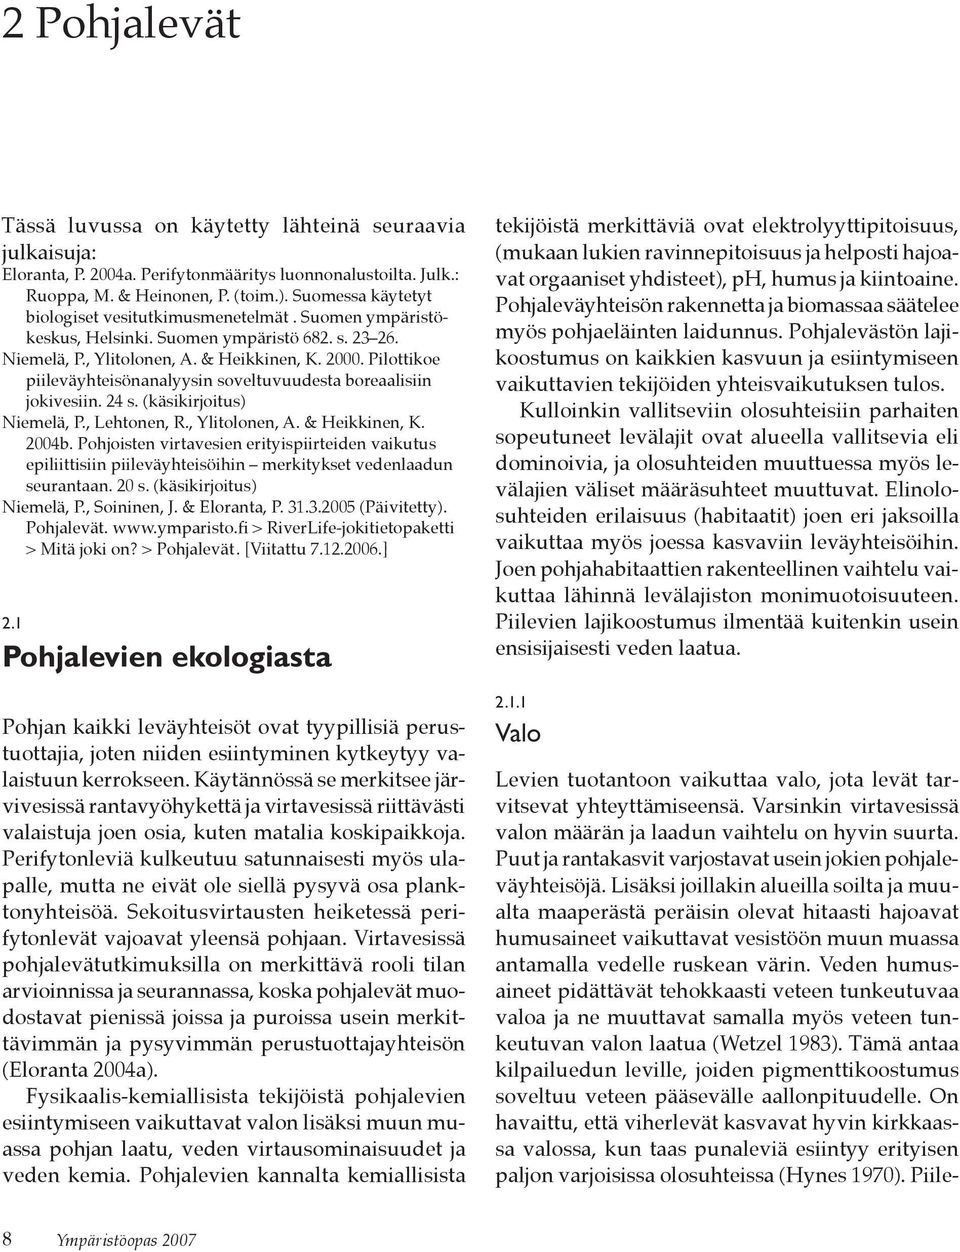 Pilottikoe piileväyhteisönanalyysin soveltuvuudesta boreaalisiin jokivesiin. 24 s. (käsikirjoitus) Niemelä, P., Lehtonen, R., Ylitolonen, A. & Heikkinen, K. 2004b.